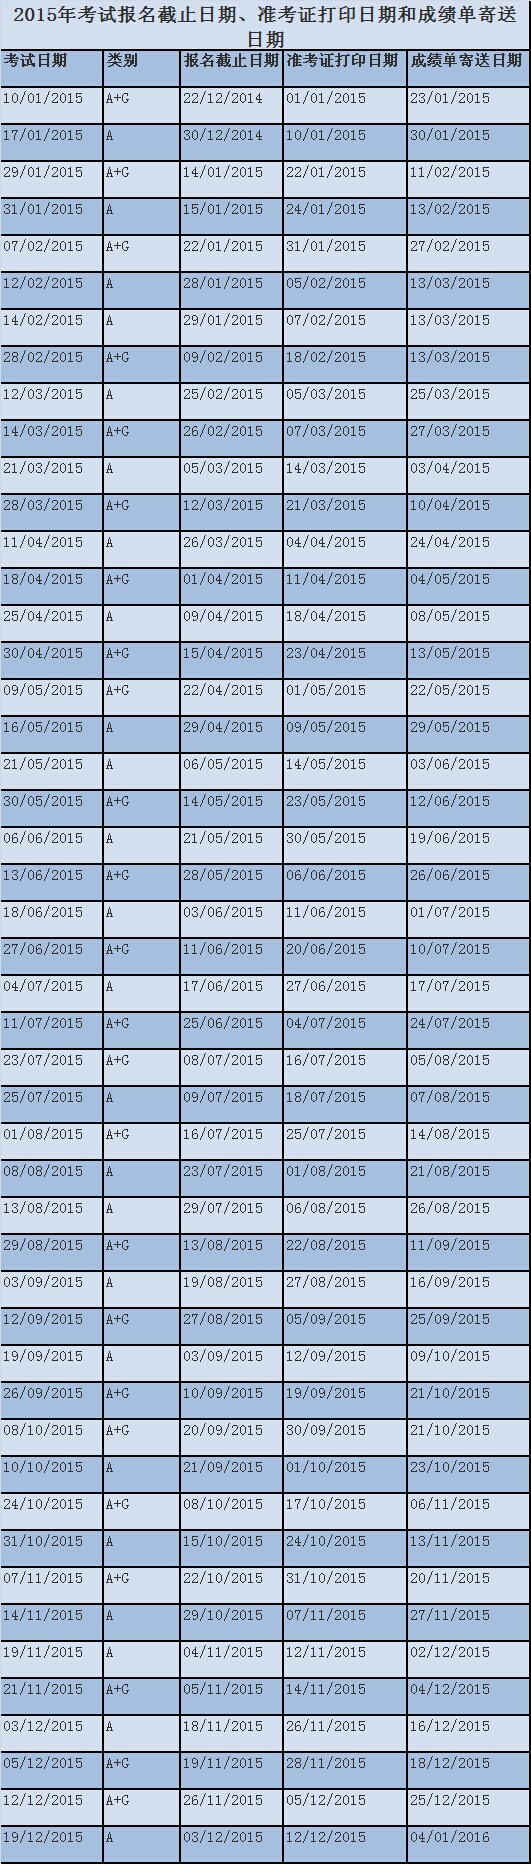 2015年雅思考试报名时间及截止日期